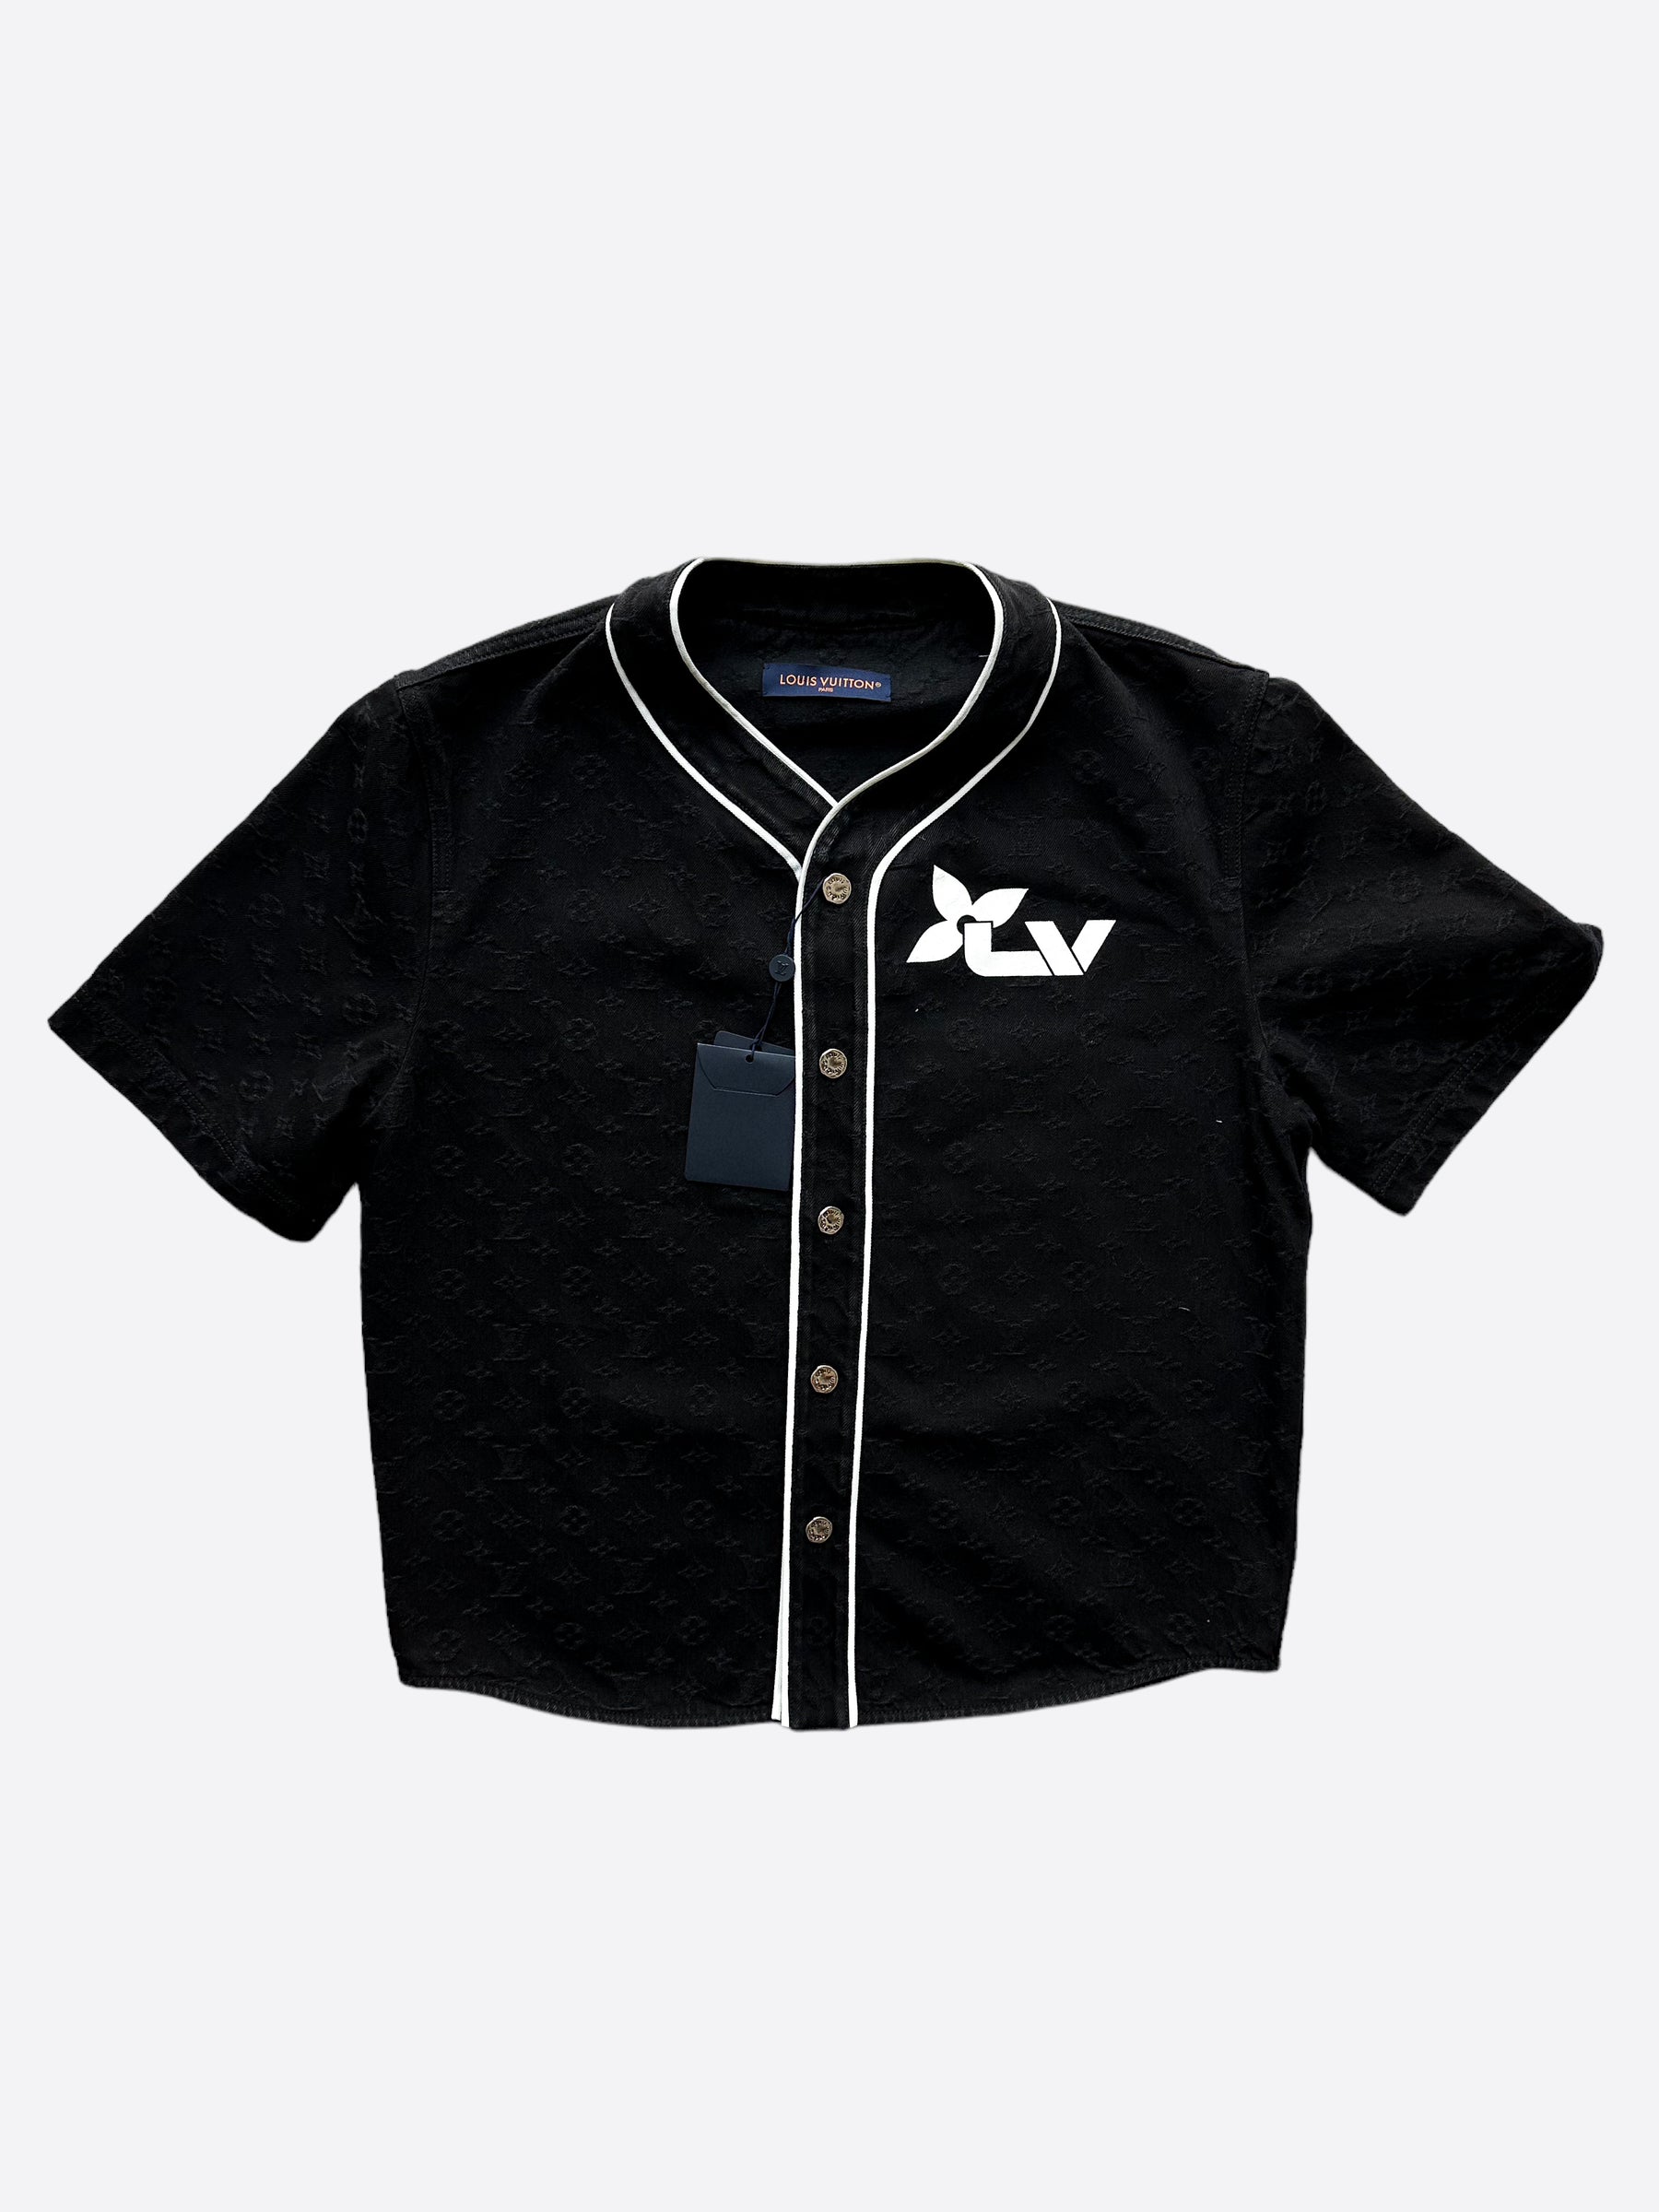 Louis vuitton monogram baseball jersey shirt lv luxury clothing